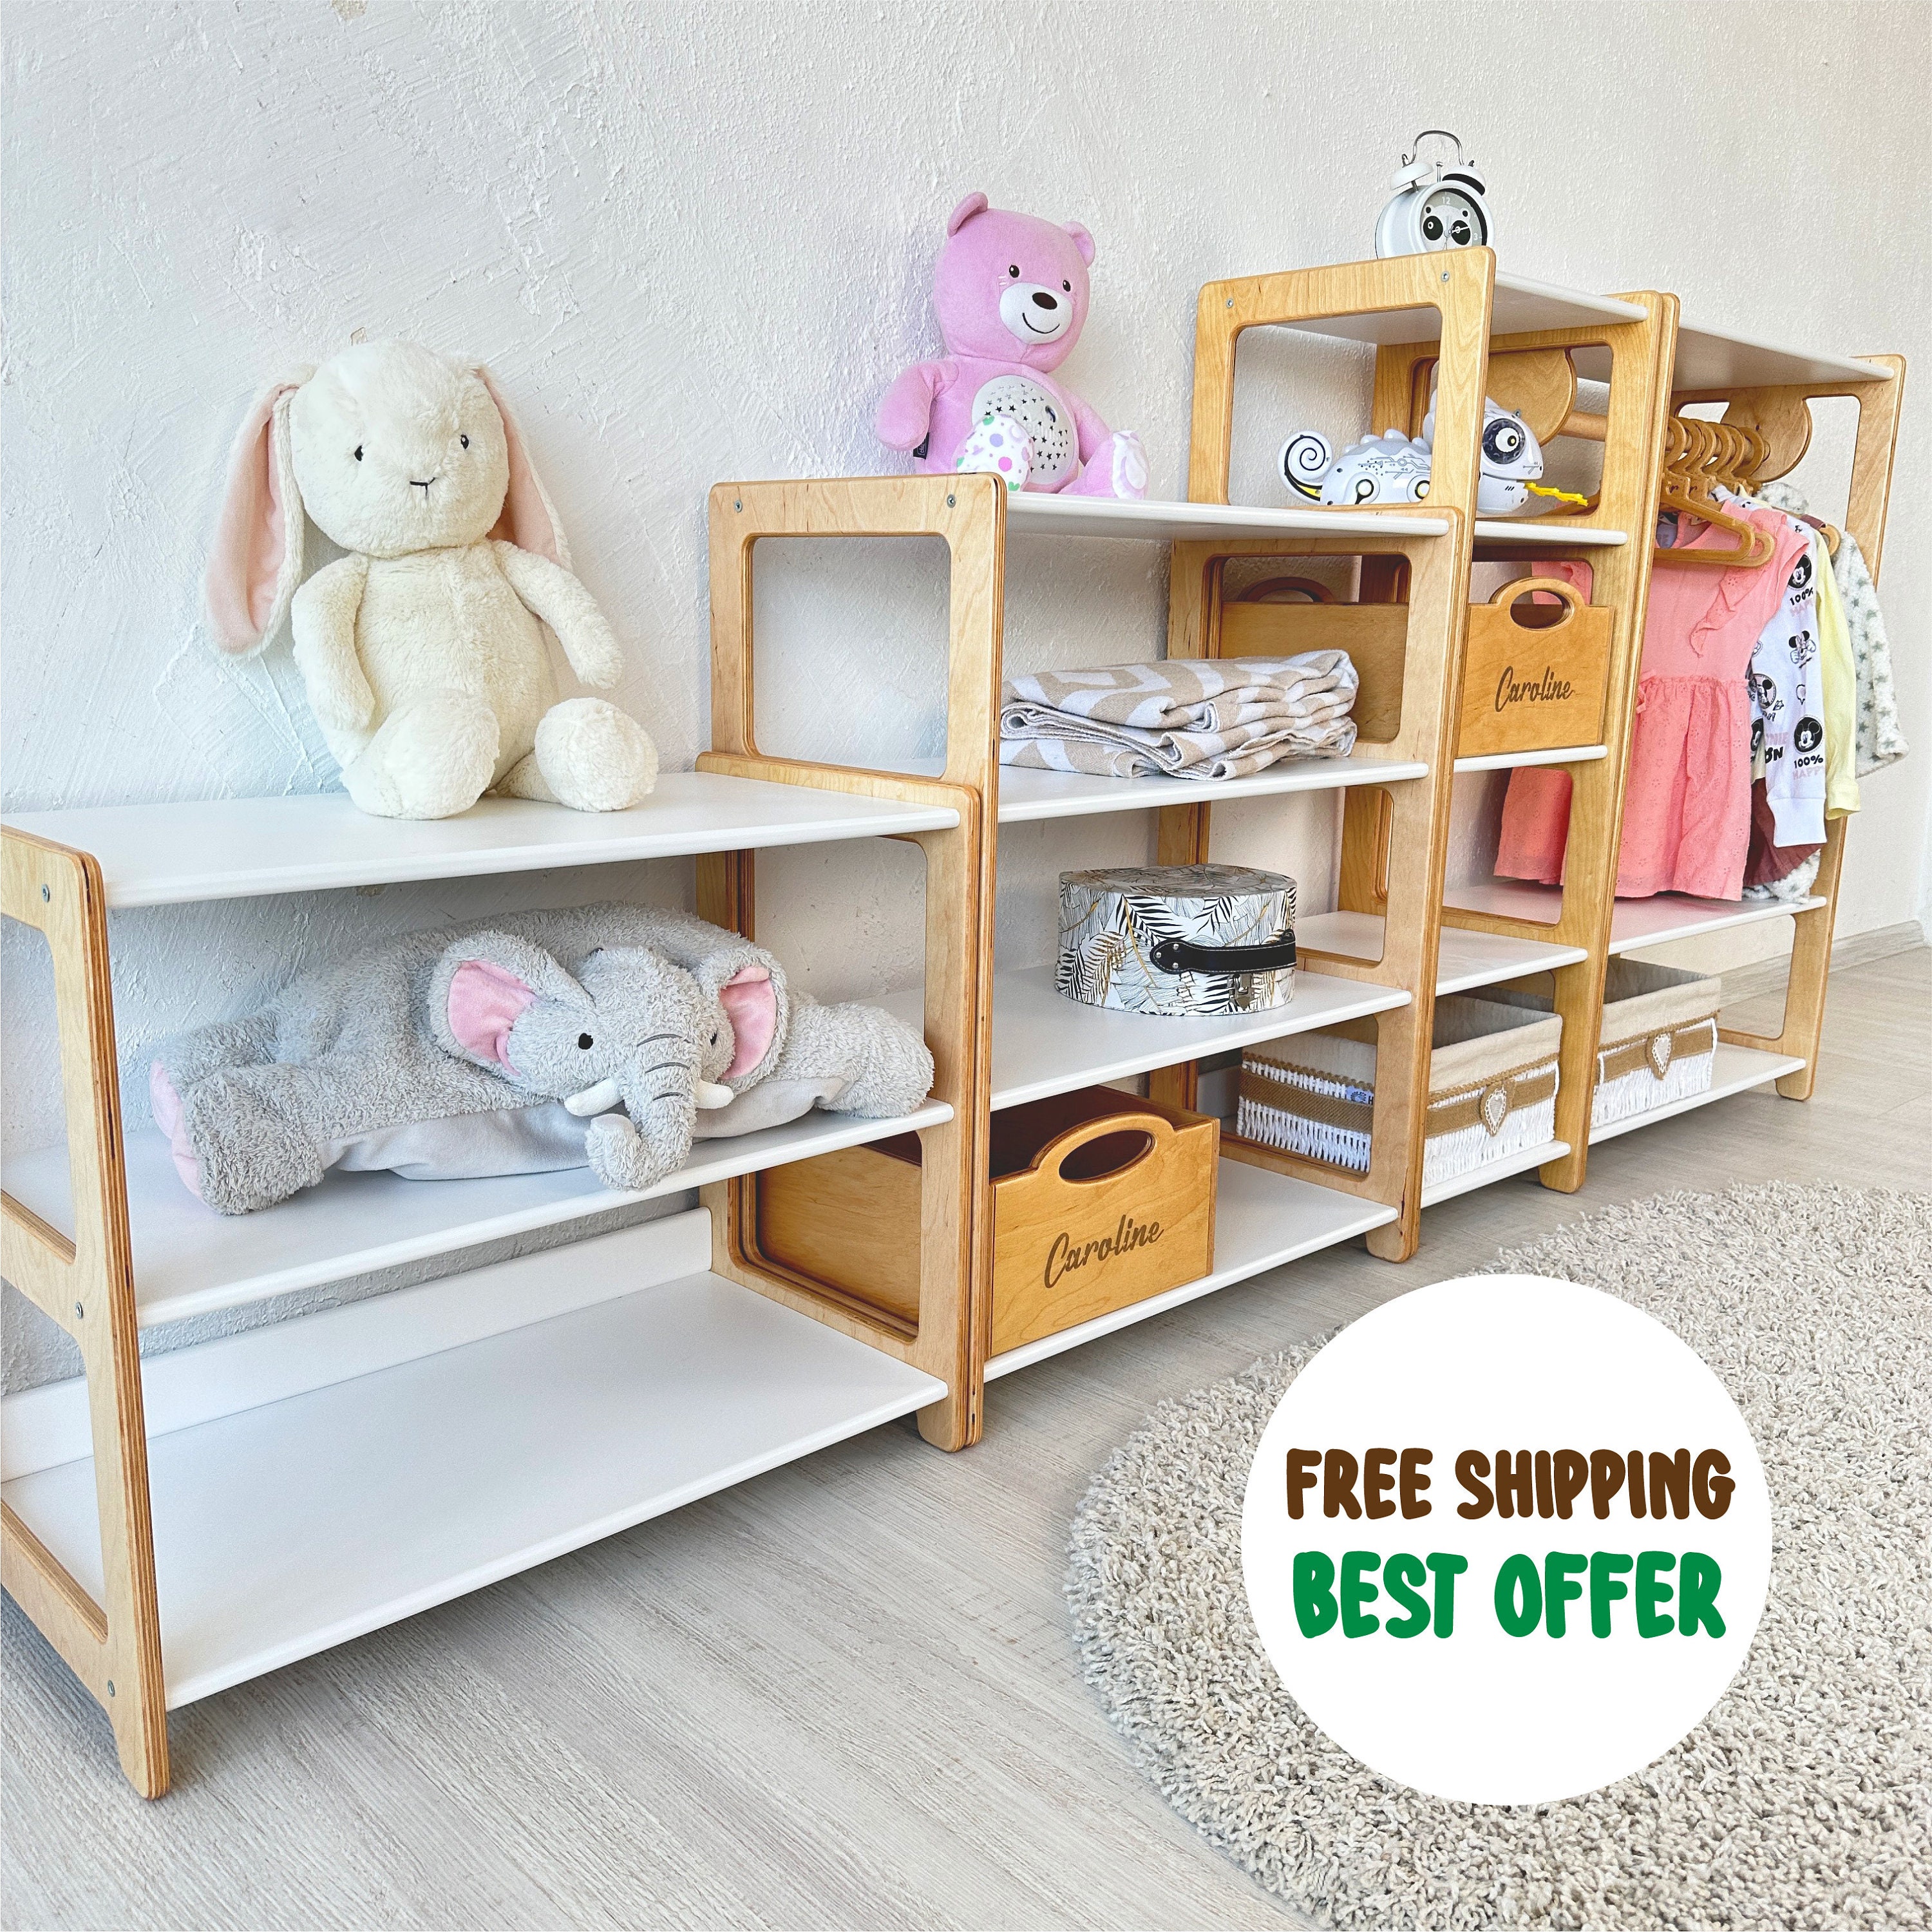 Mesa infantil con sillita - Mesa infantil de madera - Silla Infantil  Personalizada - Mobiliario Infantil - Juguetines